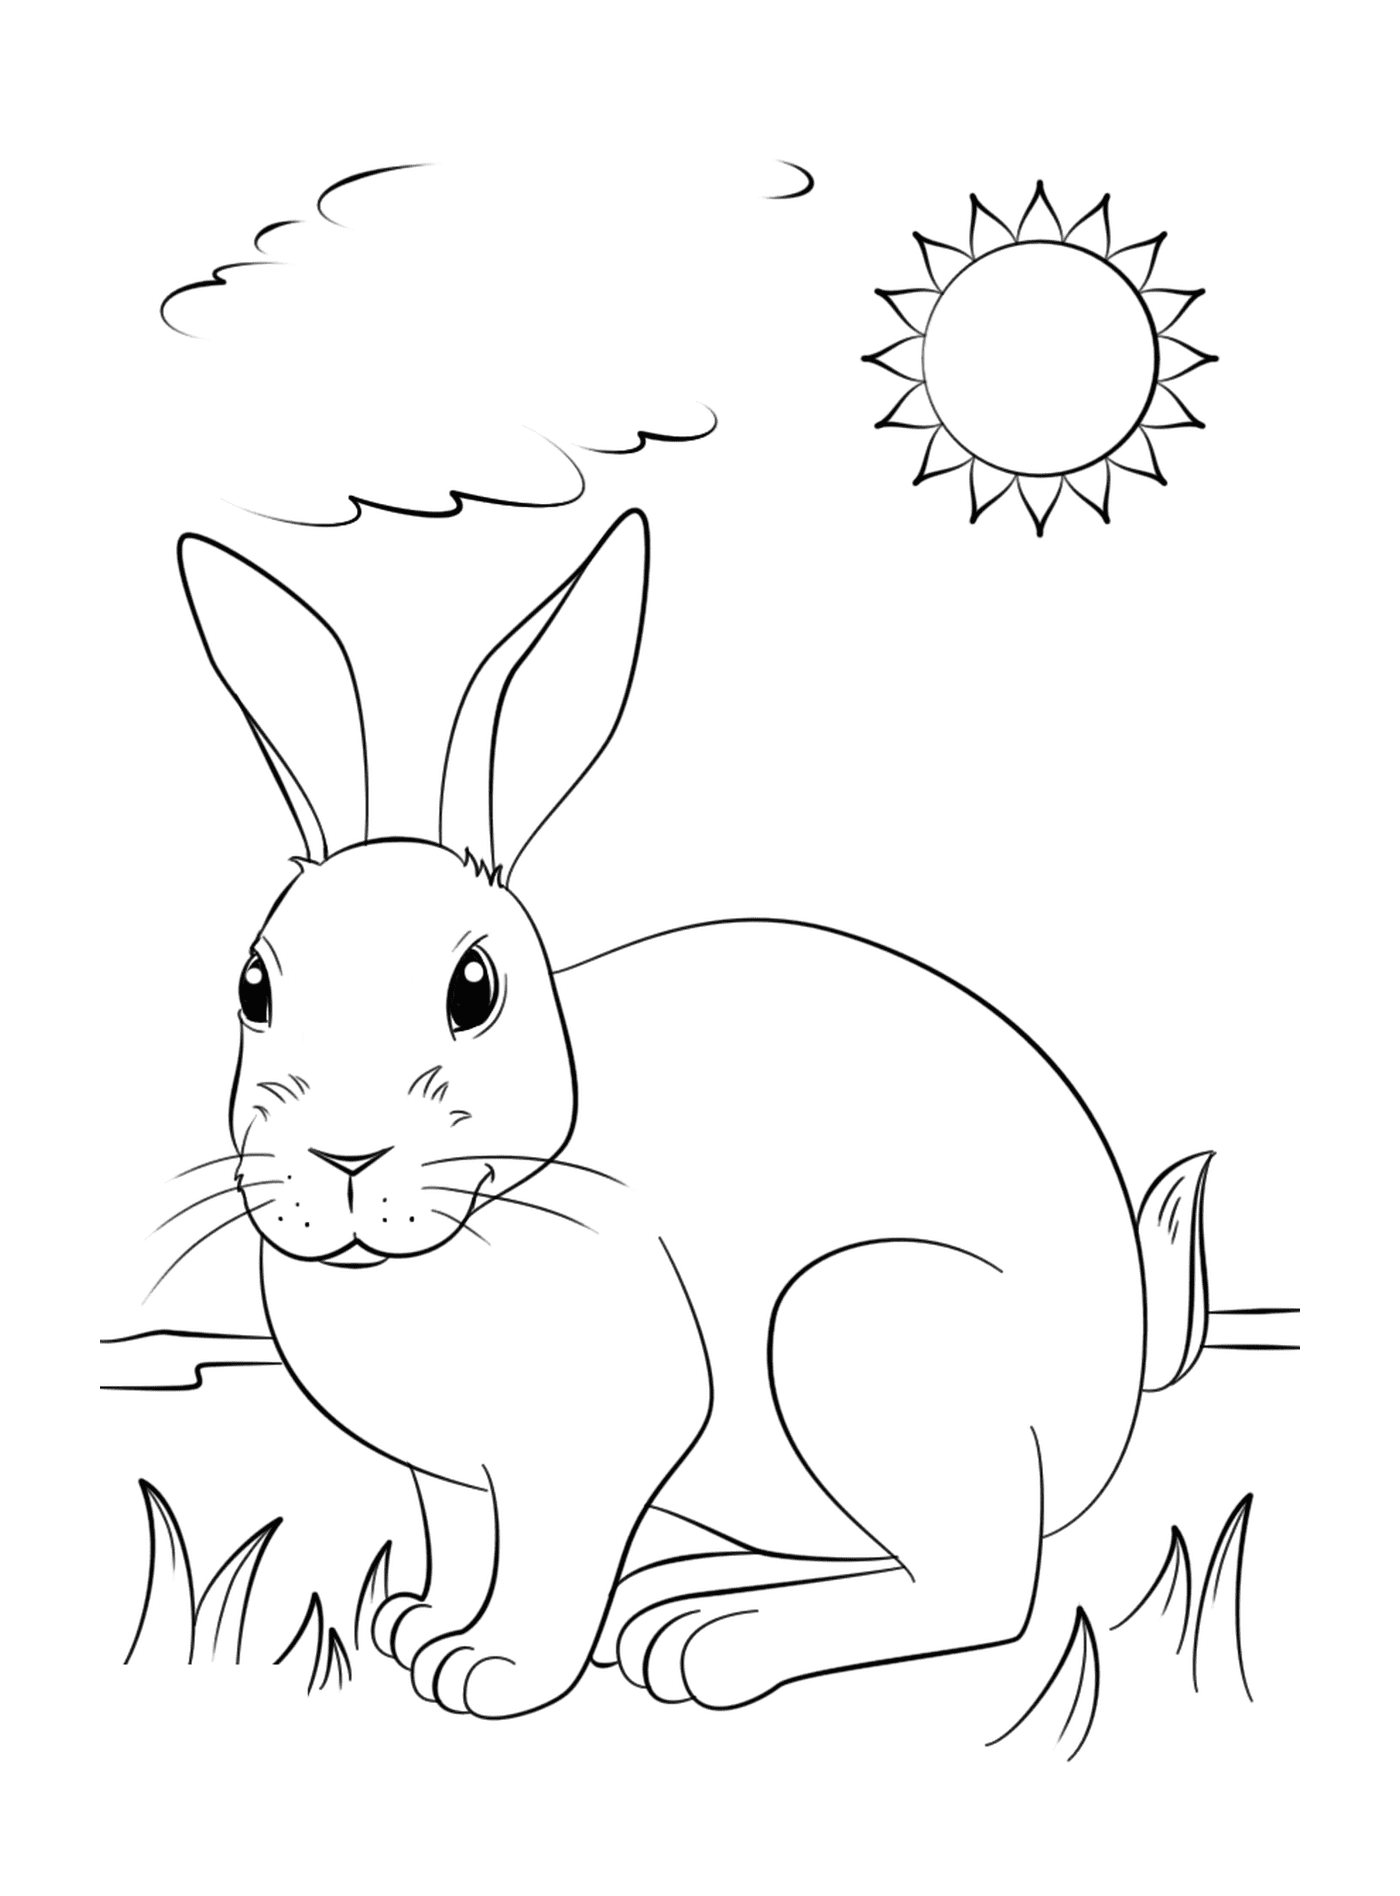  现实的兔子享受阳光 